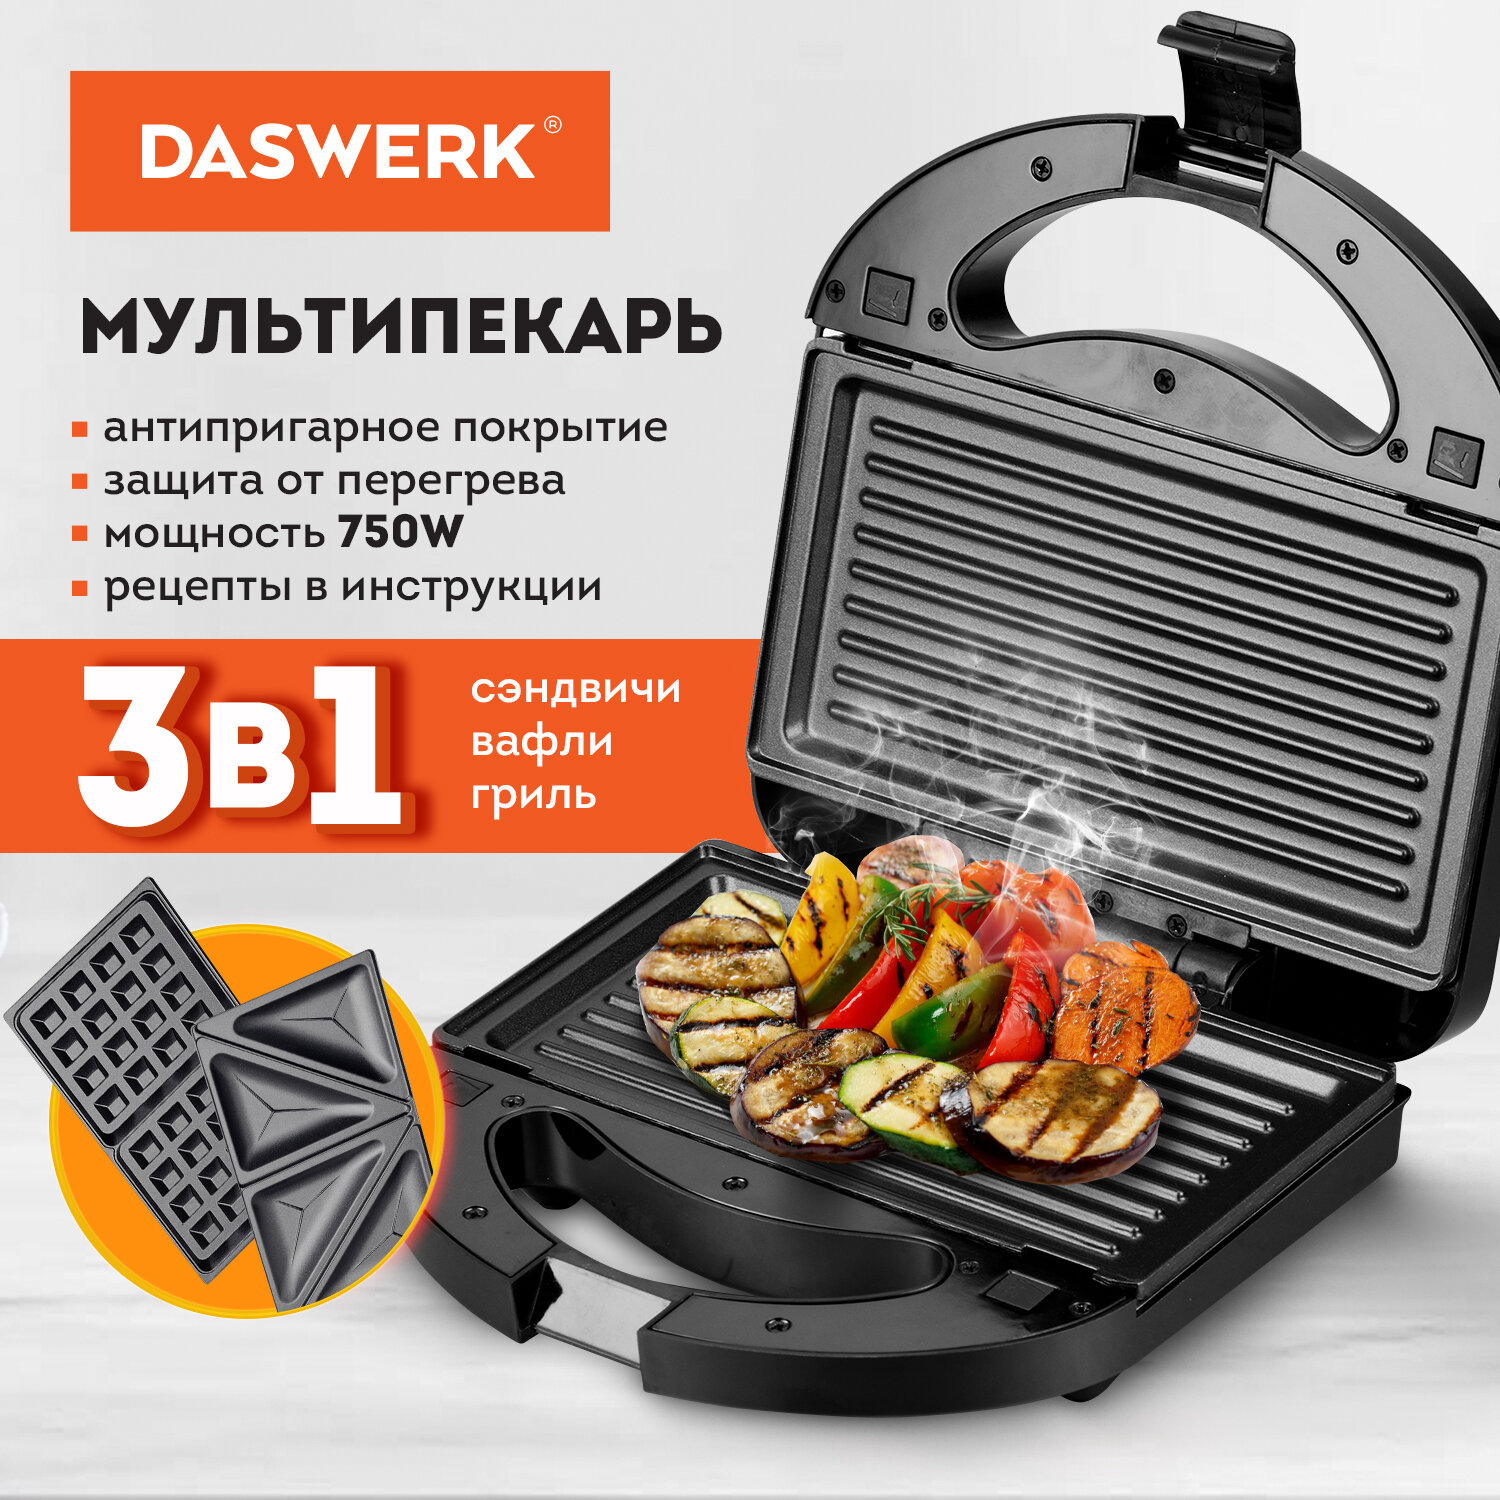 Мультипекарь DASWERK MB-1 , купить в Москве, цены в интернет-магазинах на Мегамаркет